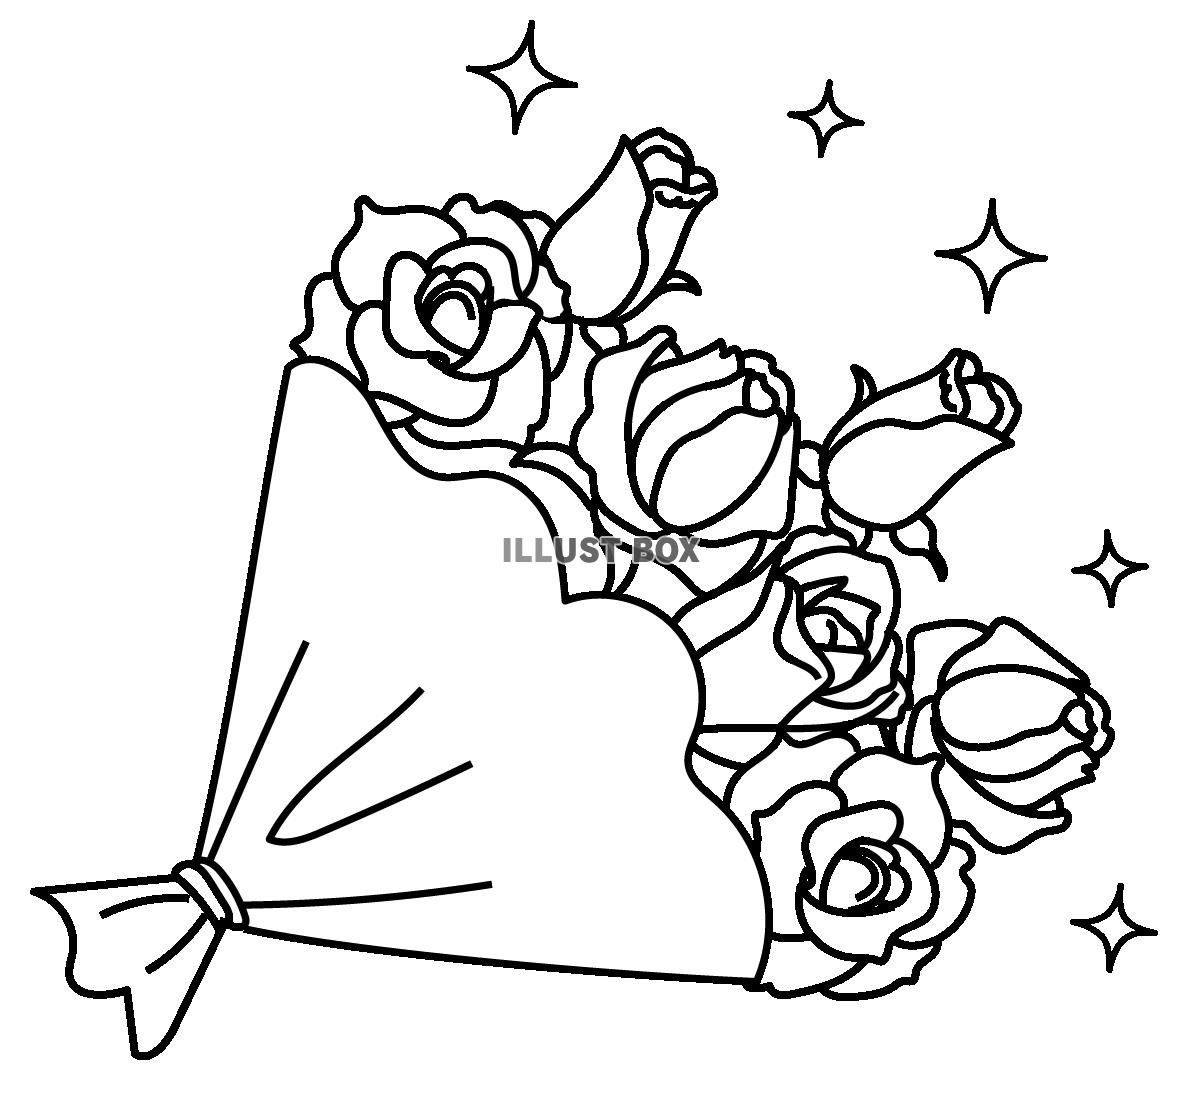 無料イラスト 透過 手書きのバラの花束のイラスト 白黒モノクロ線画感謝ブー